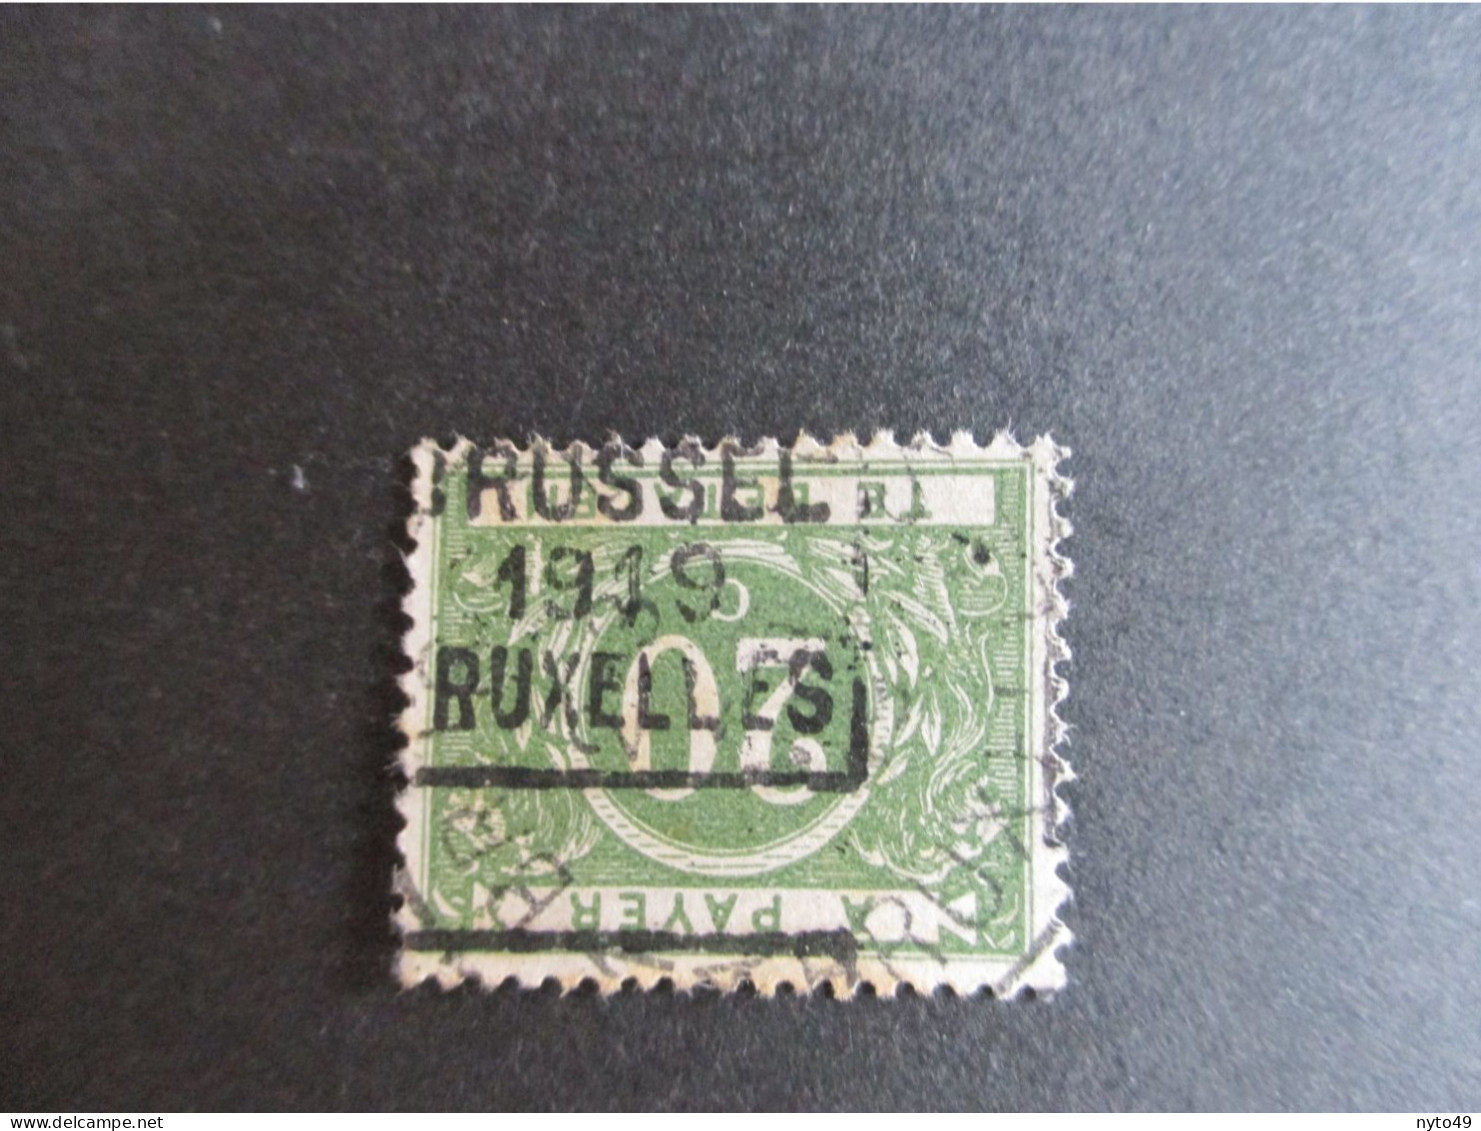 TX14A - Gestempeld Bruxelles 1919 - OCB € 50 - Stamps